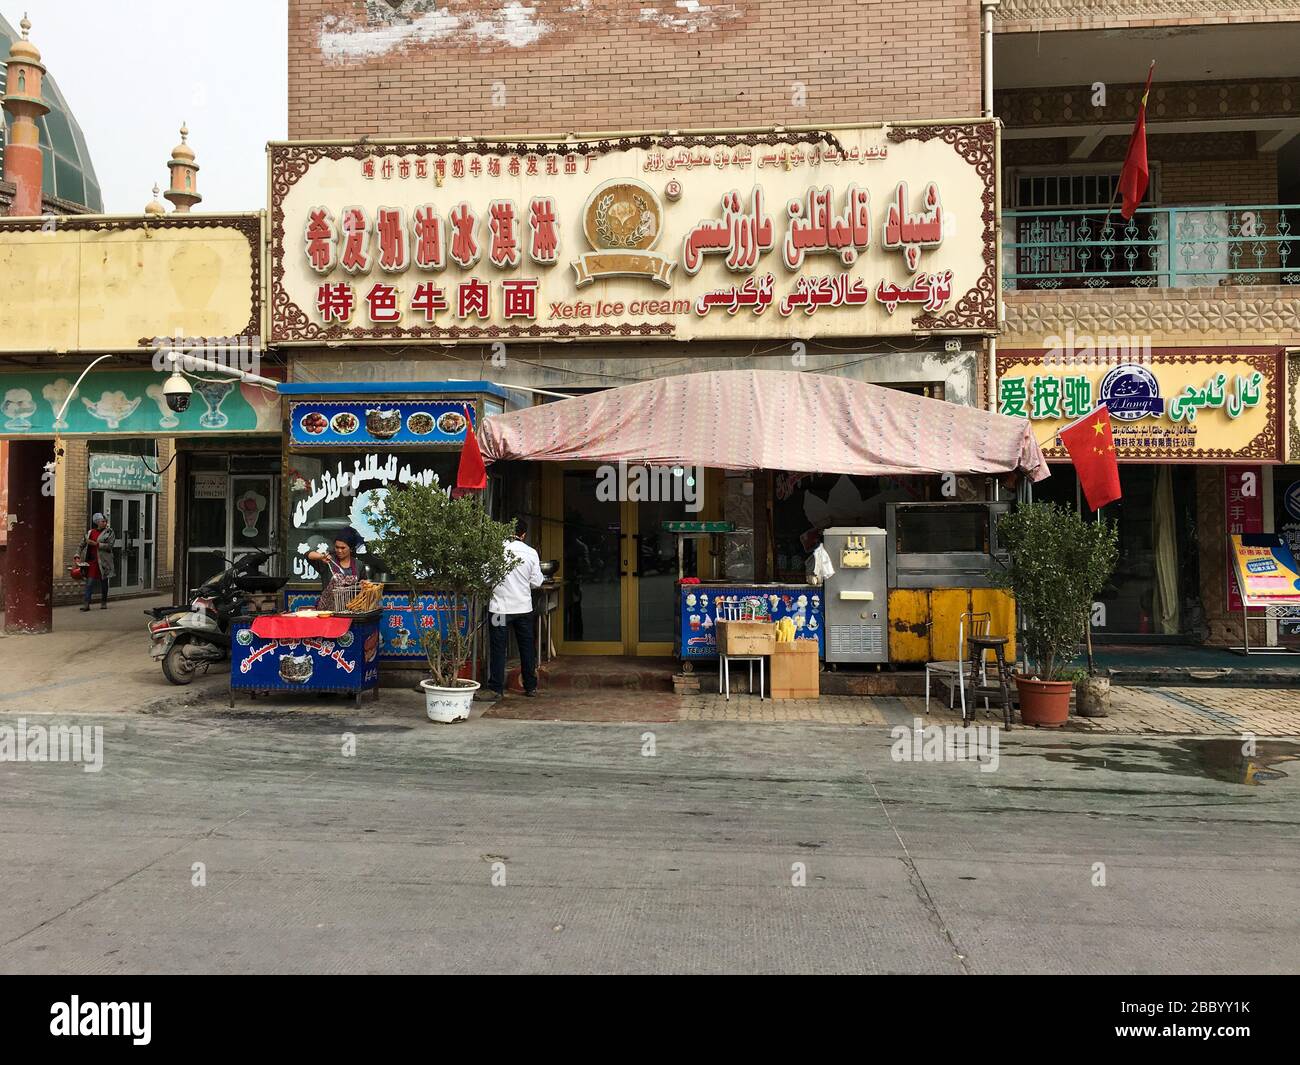 Magasinez à Kashgar pour vendre des bonbons traditionnels et de la crème glacée (Xinjiang, Chine). Banque D'Images